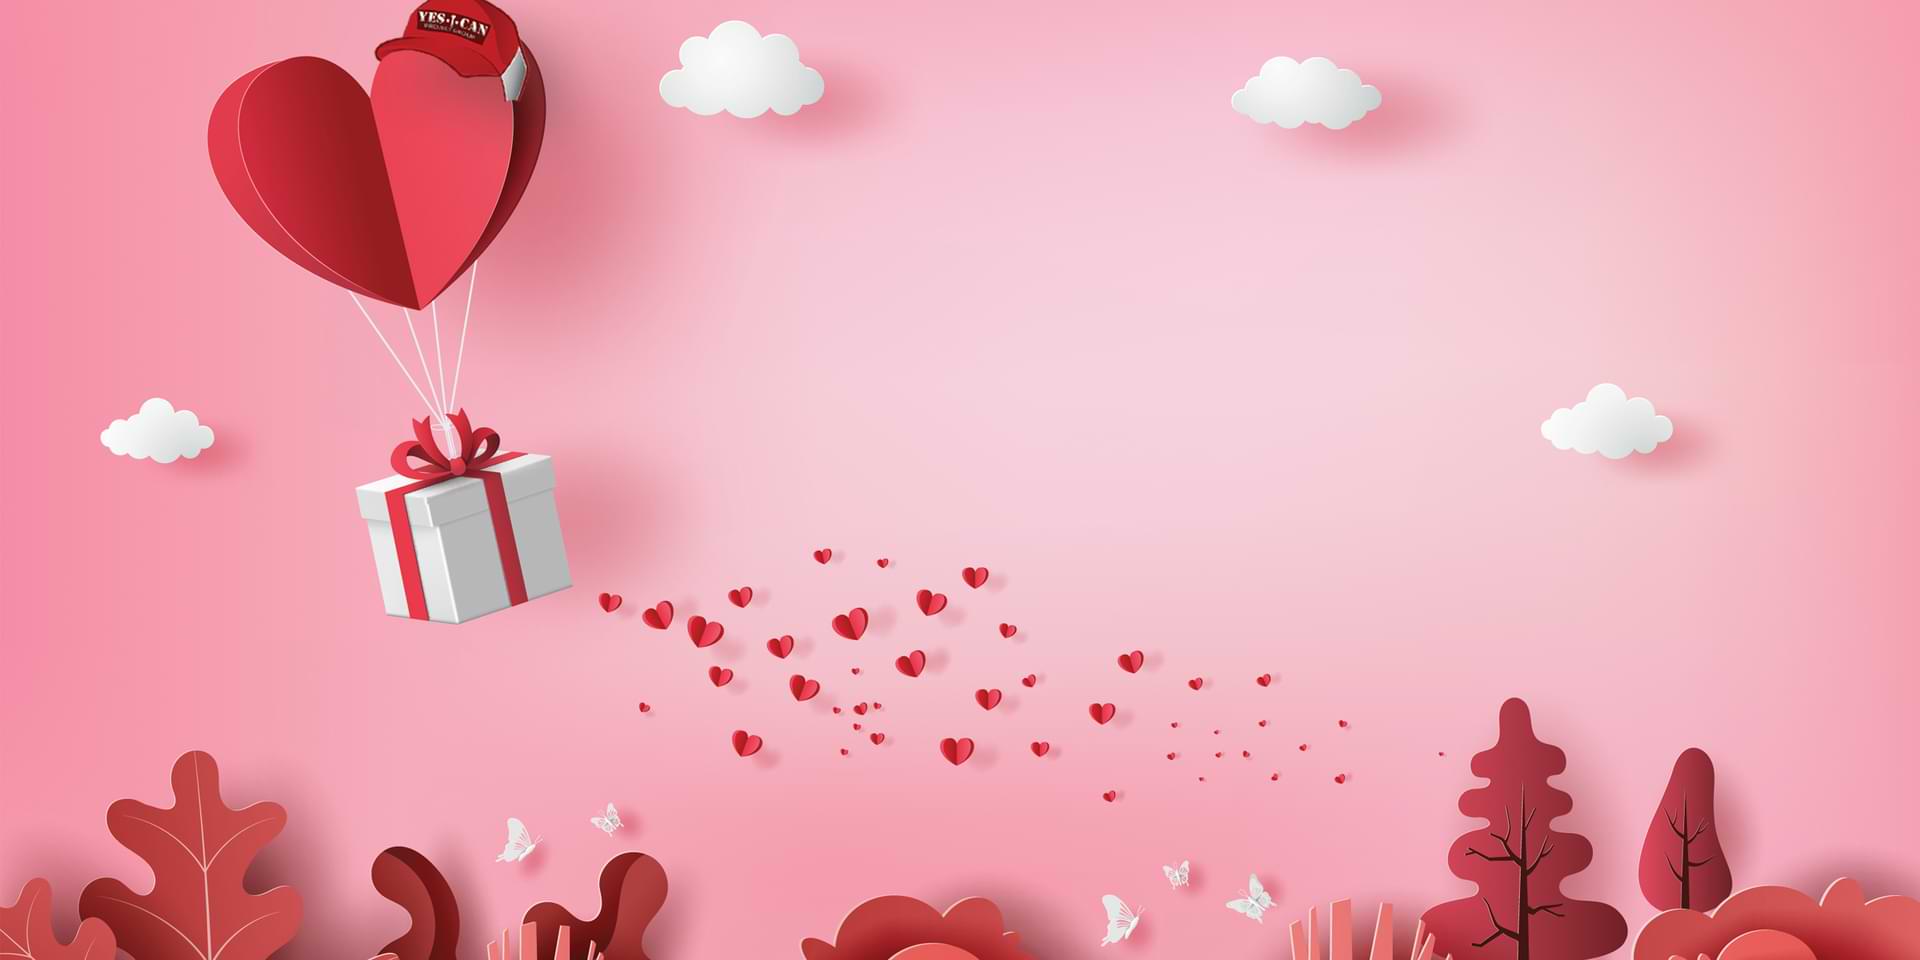 Valentine's Day 2021 - gift ideas